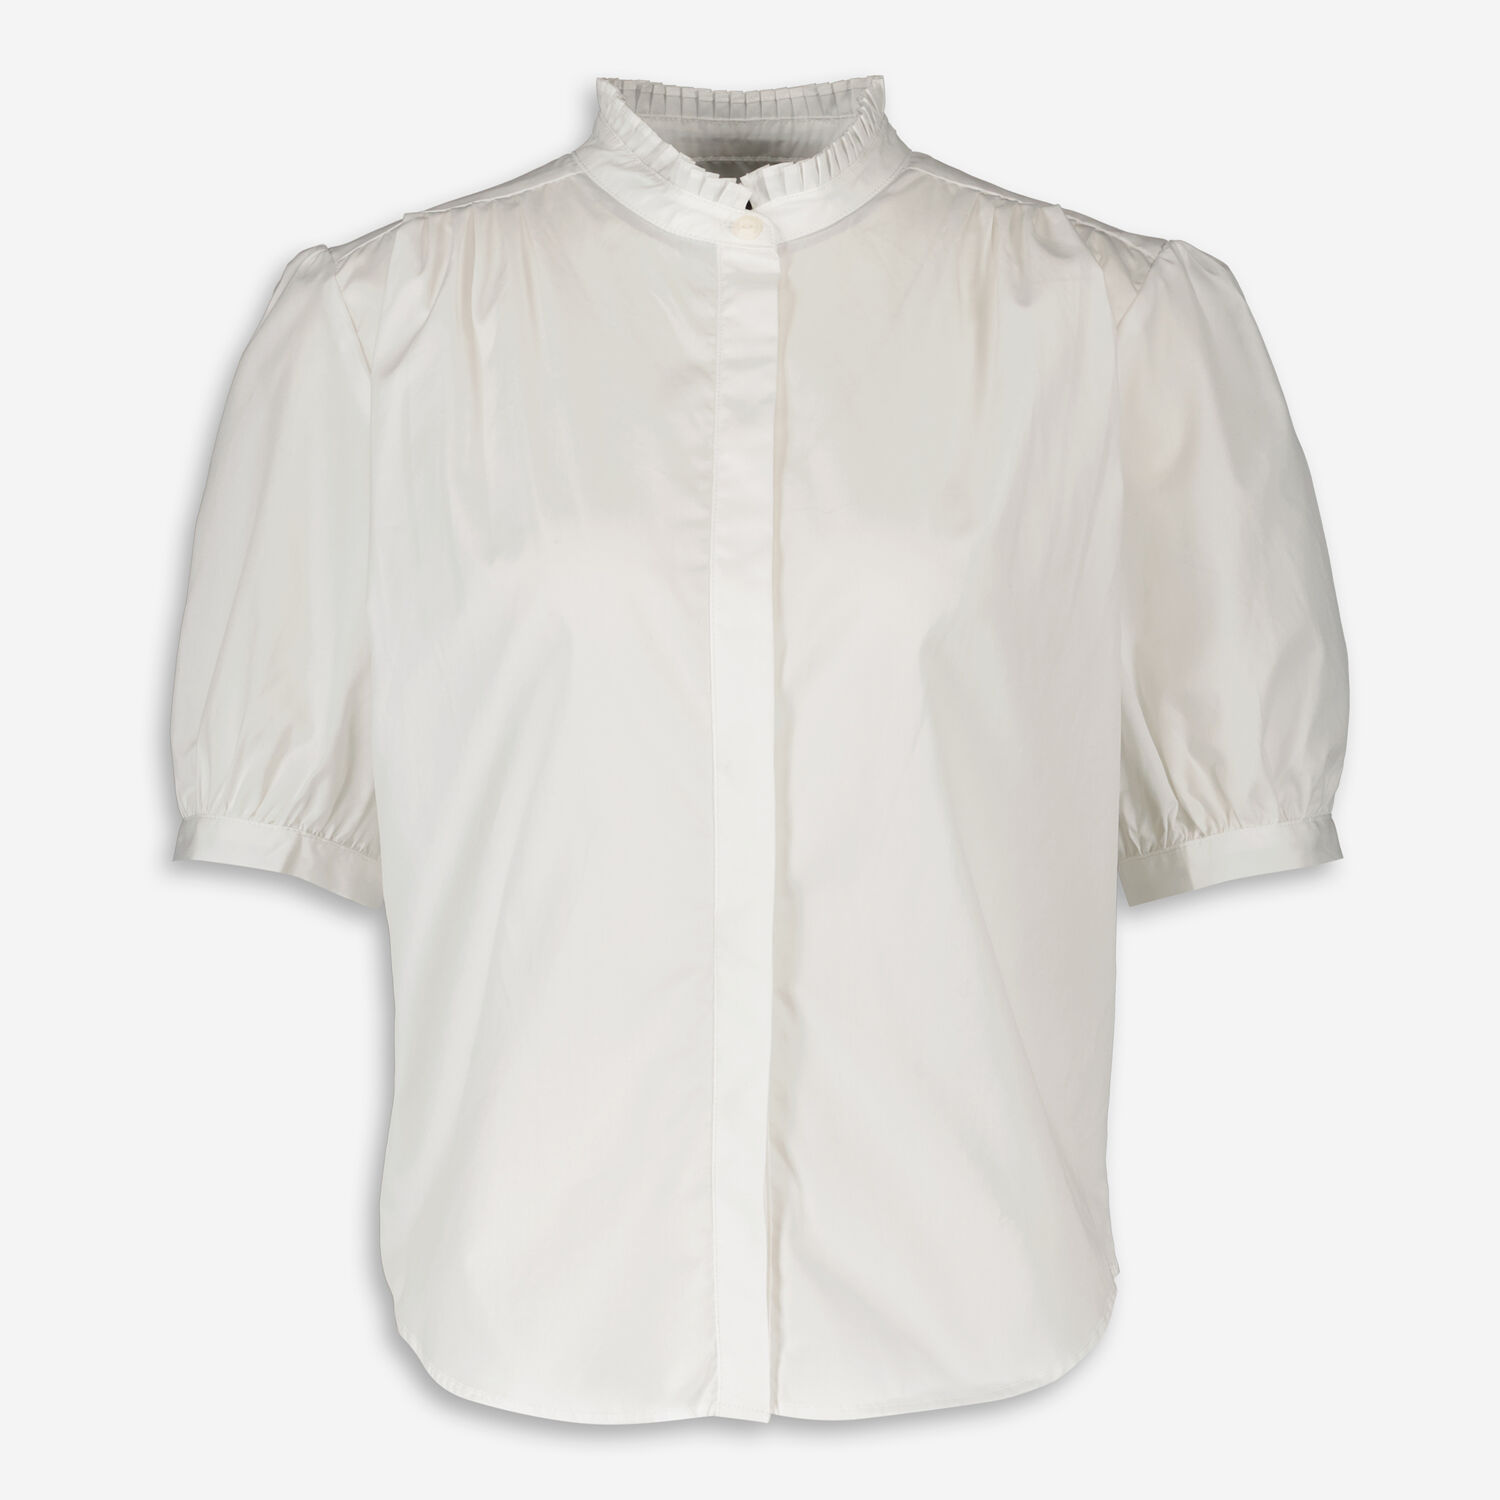 цена Белая блузка-рубашка Jordan с рюшами на воротнике Rag & Bone